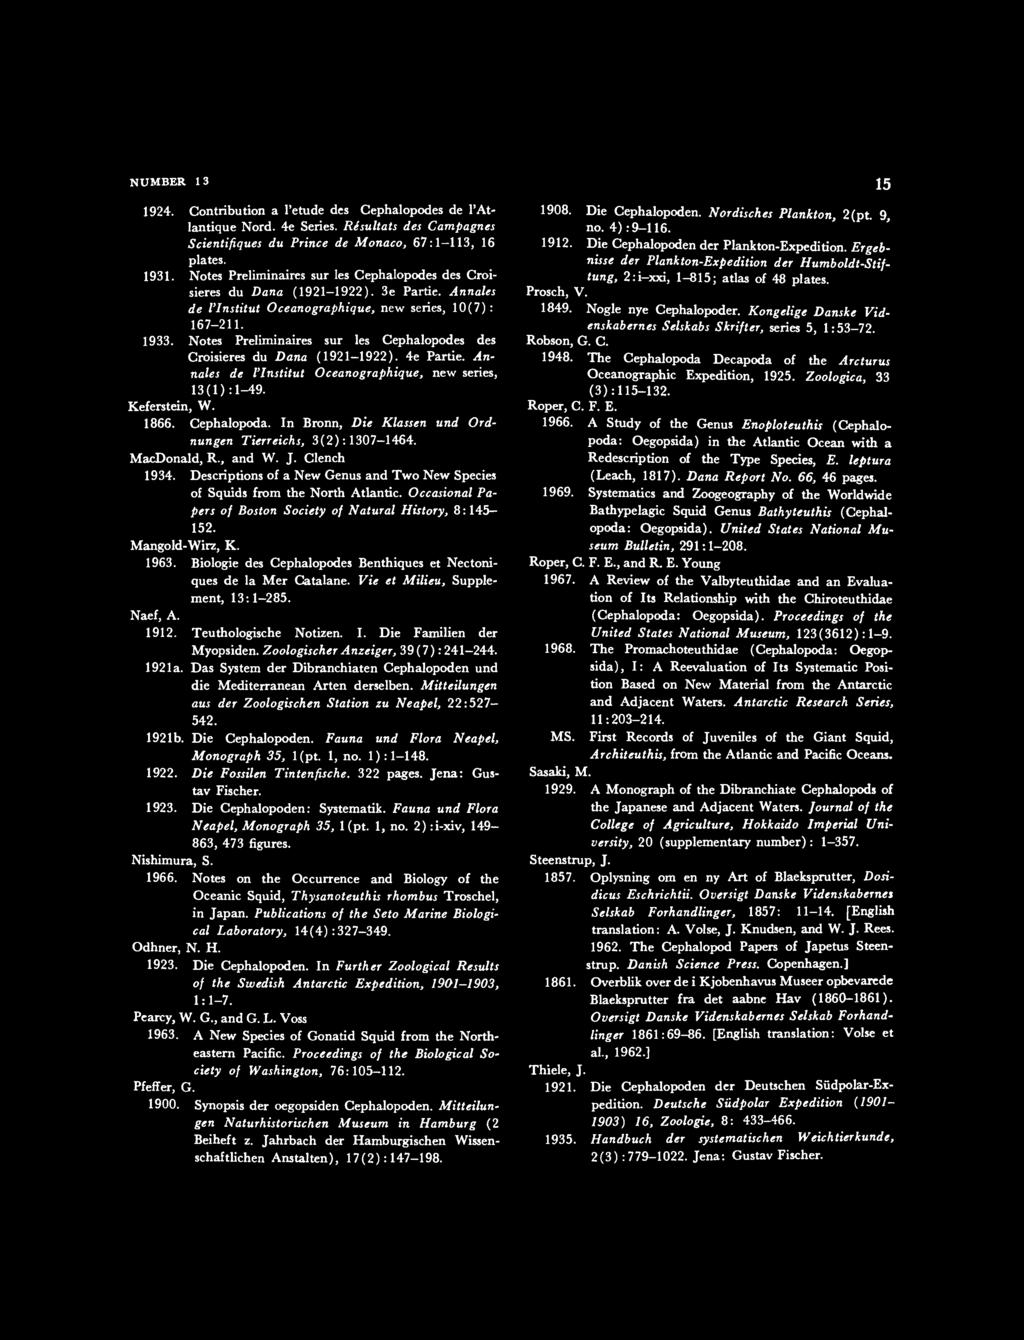 NUMBER 13 1924. Contribution a l'etude des Cephalopodes de l'atlantique Nord. 4e Series. Re suit at s des Campagnes Scientifiques du Prince de Monaco, 67:1-113, 16 plates. 1931.